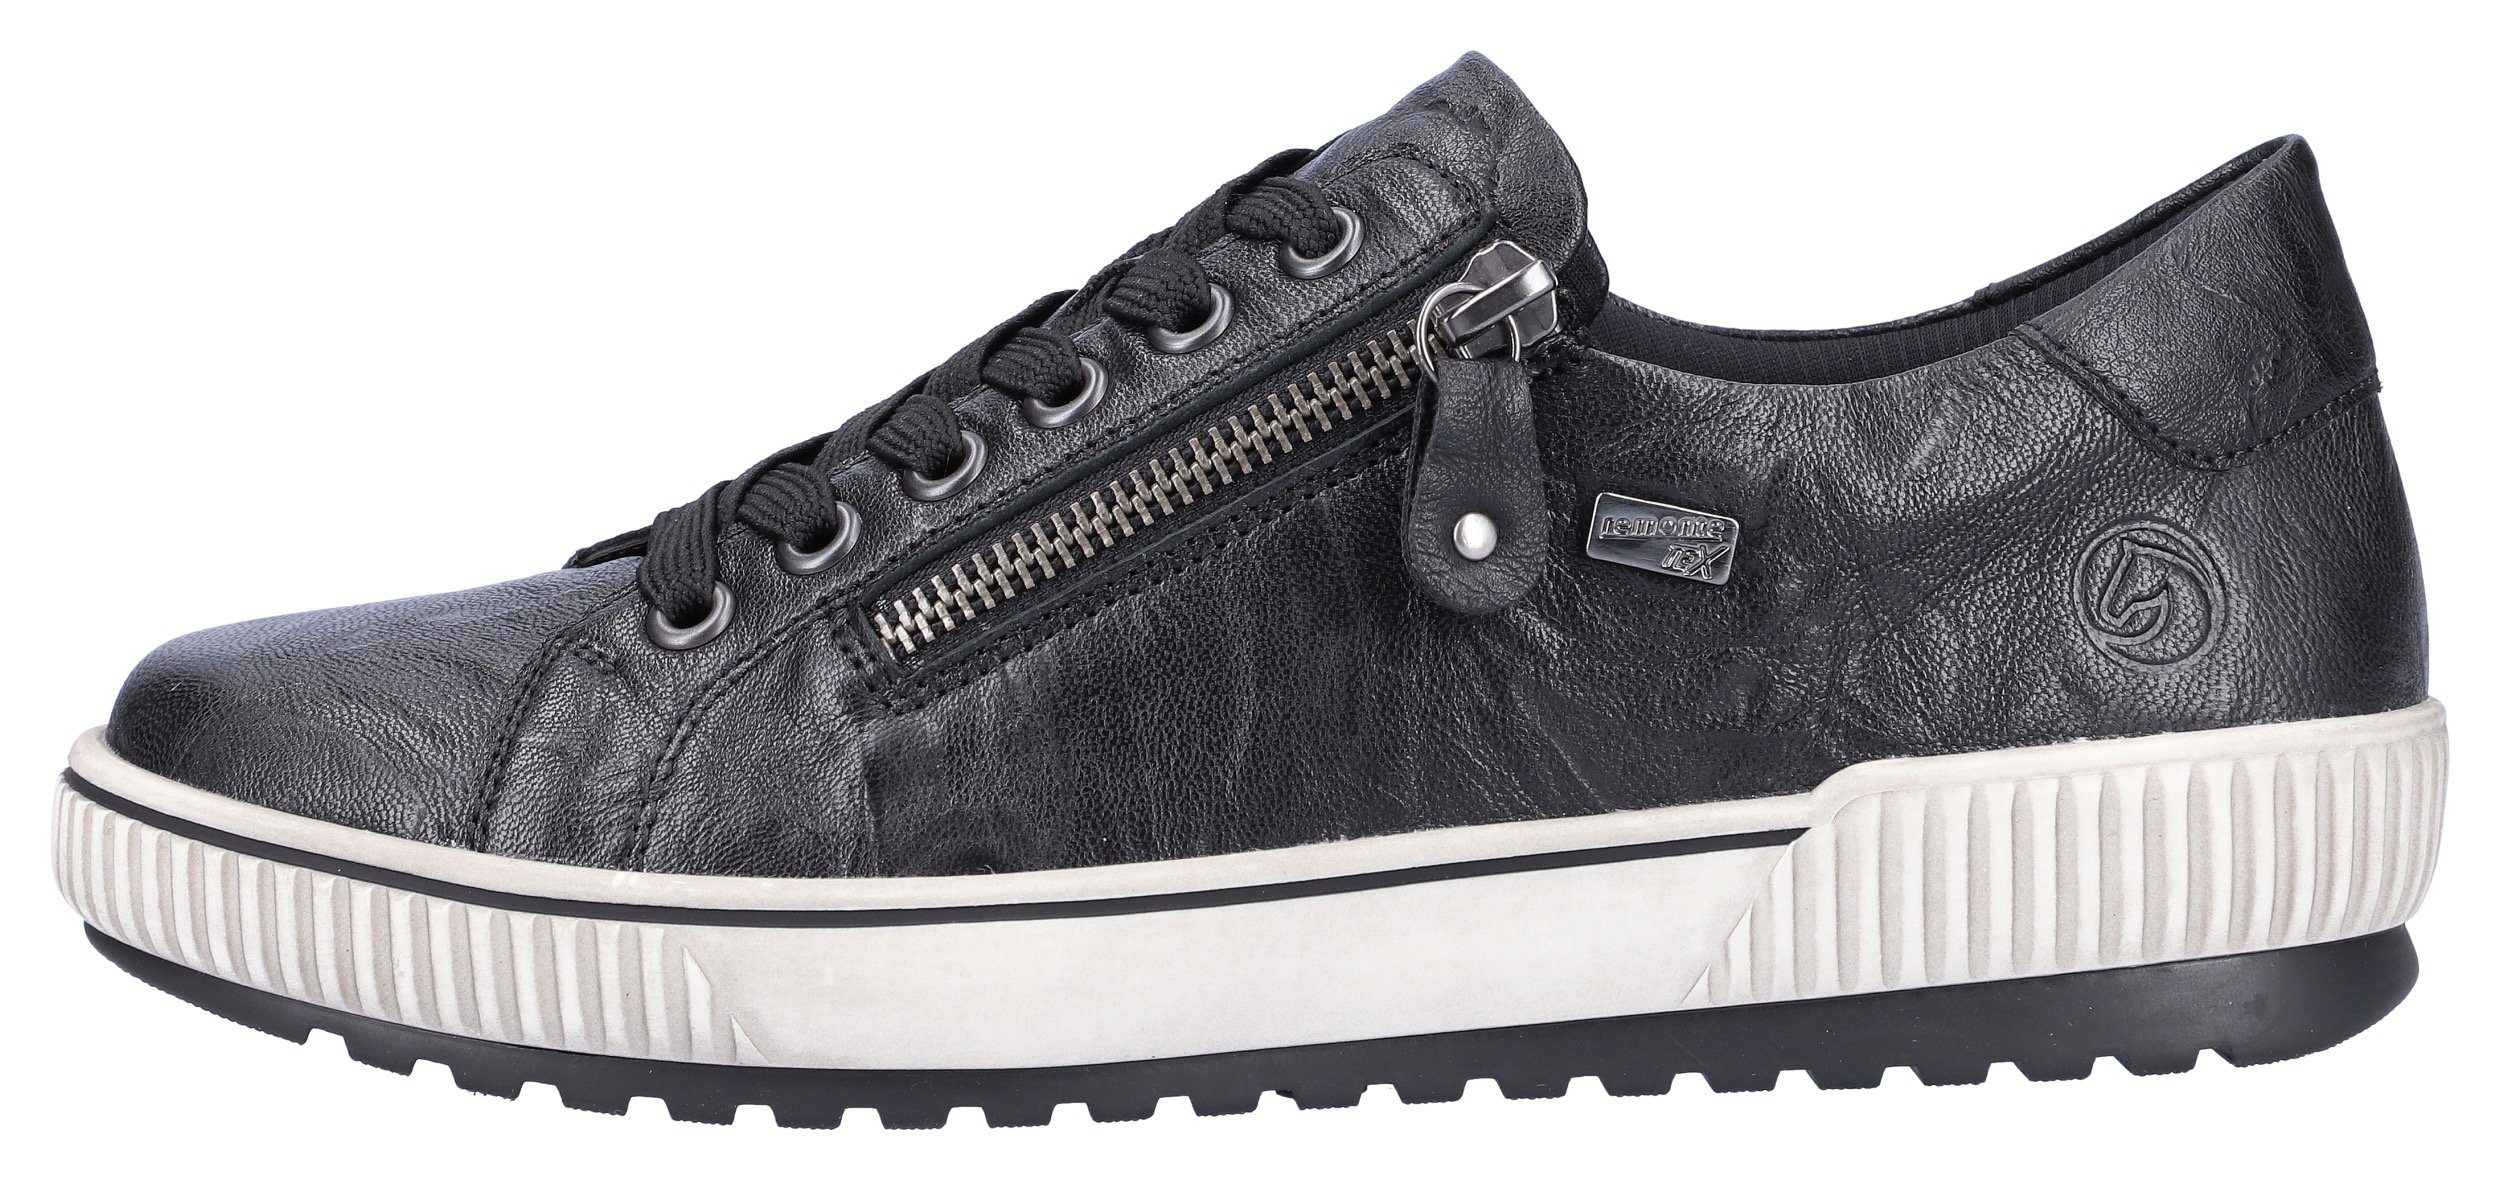 Remonte Sneaker mit praktischem Außenreißverschluss schwarz